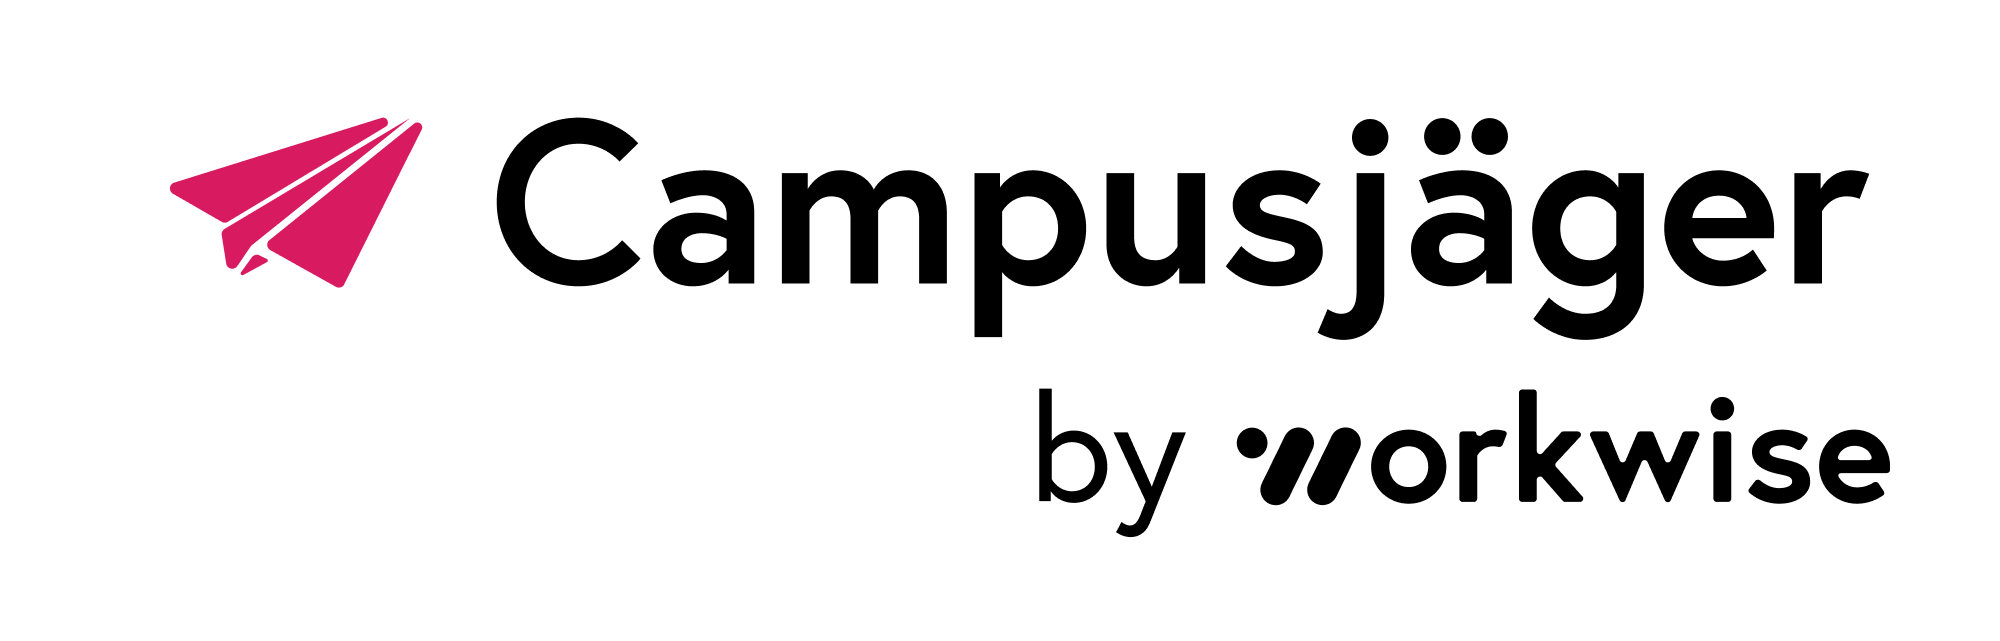 Campusjaeger